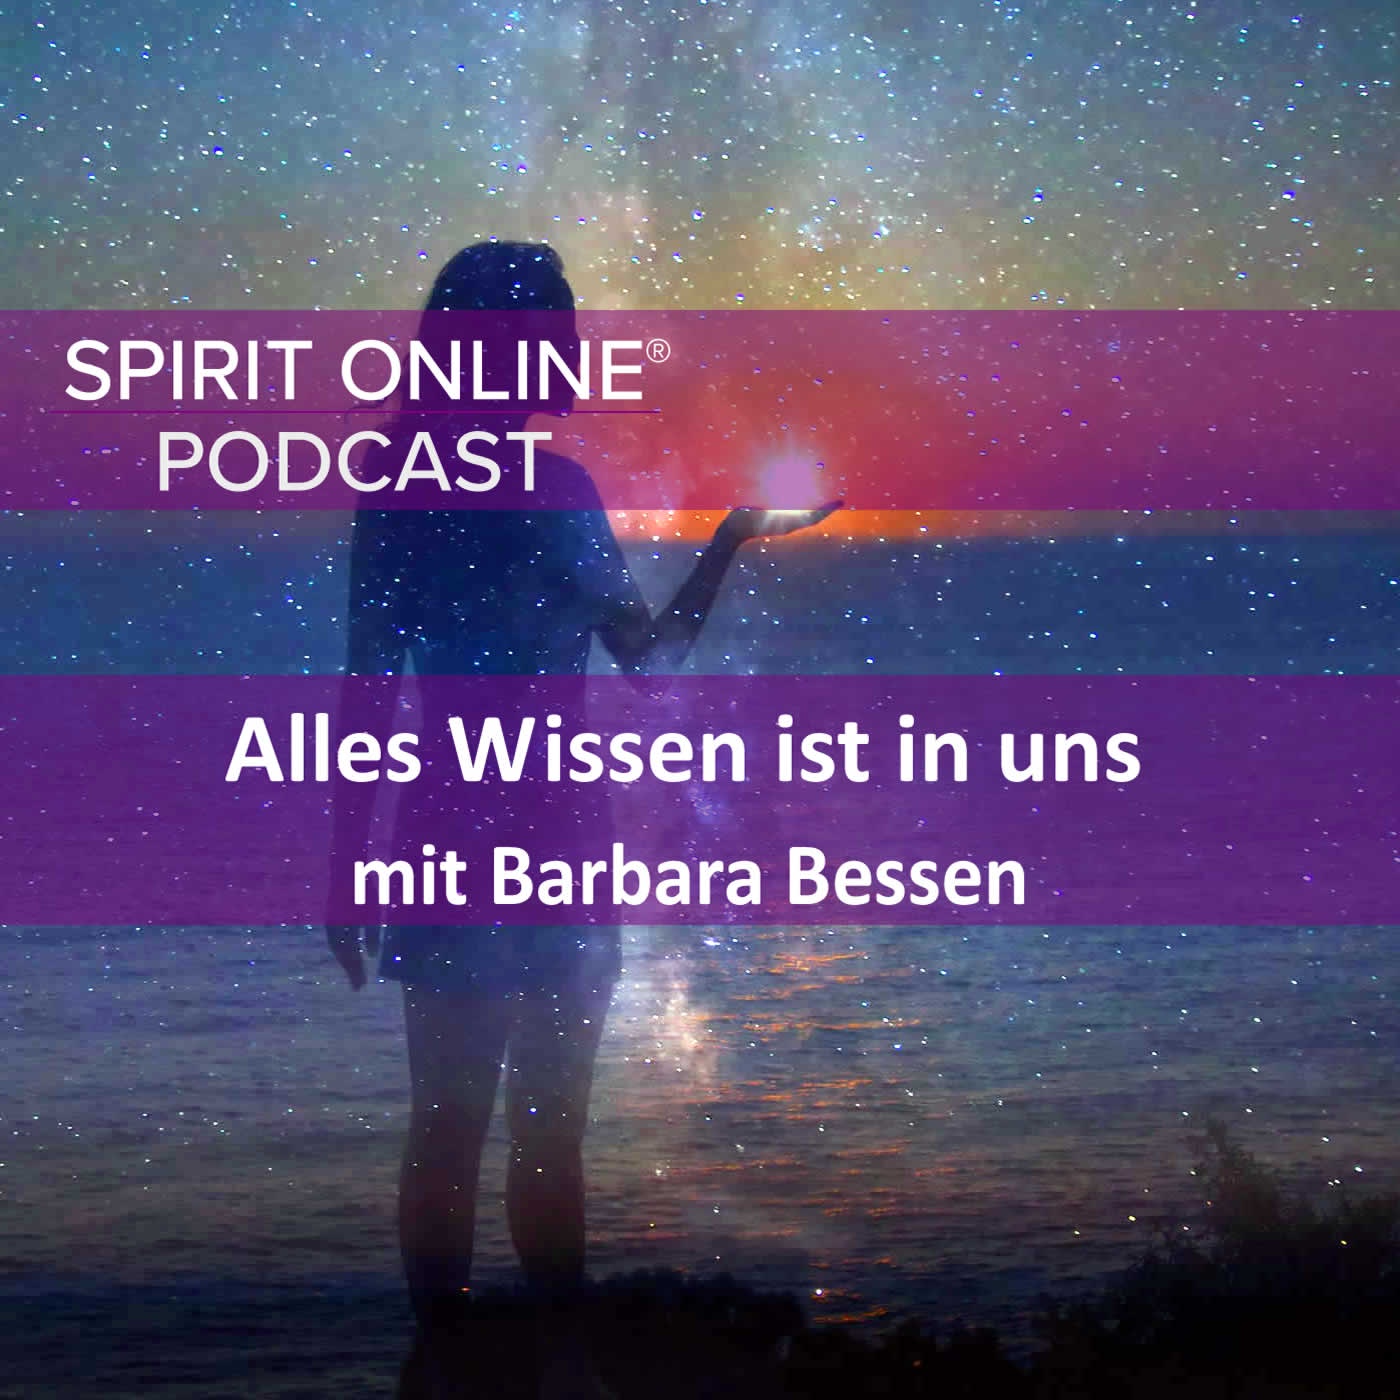 Alles Wissen ist in uns Podcast mit Barbara Bessen